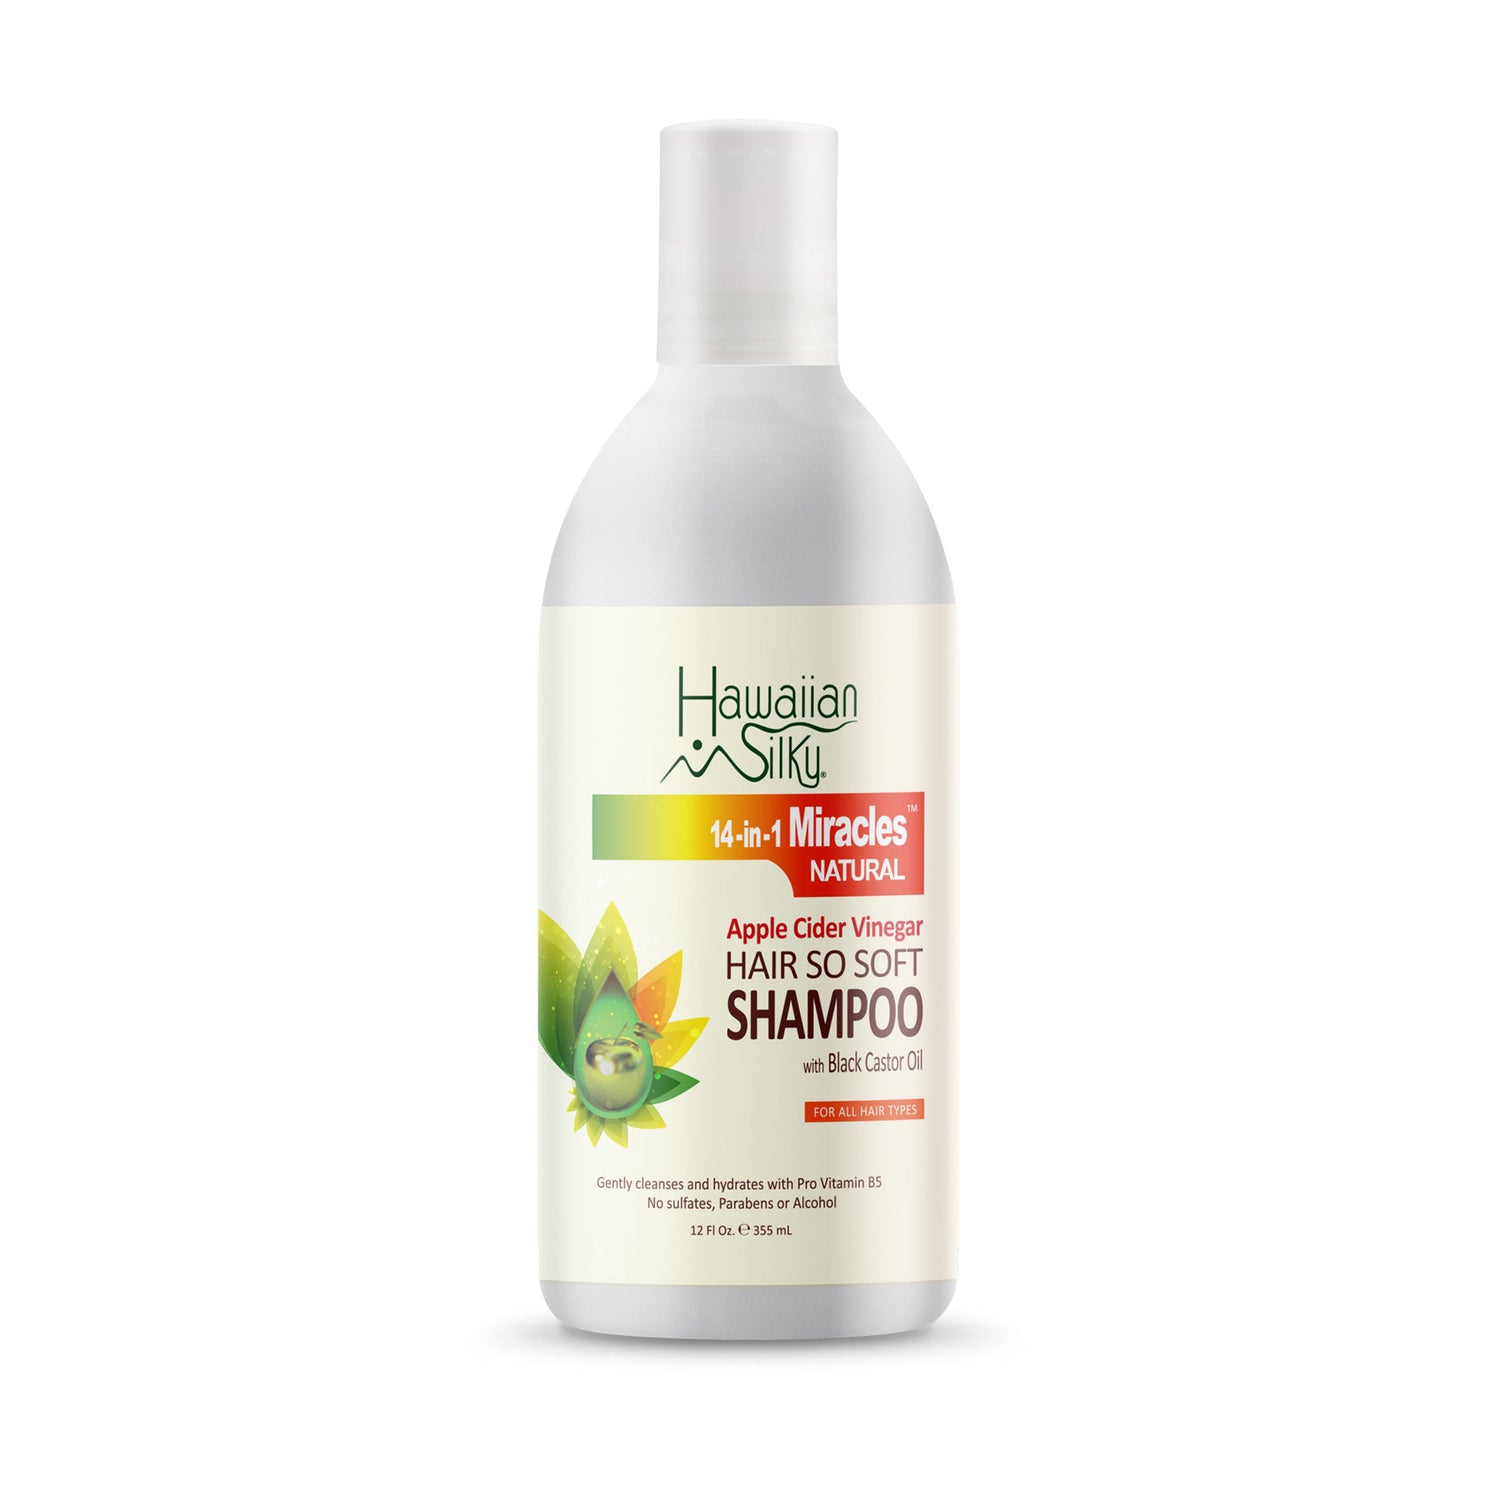 Hawaiian Silky - 14-in-1 Miracles Shampoo